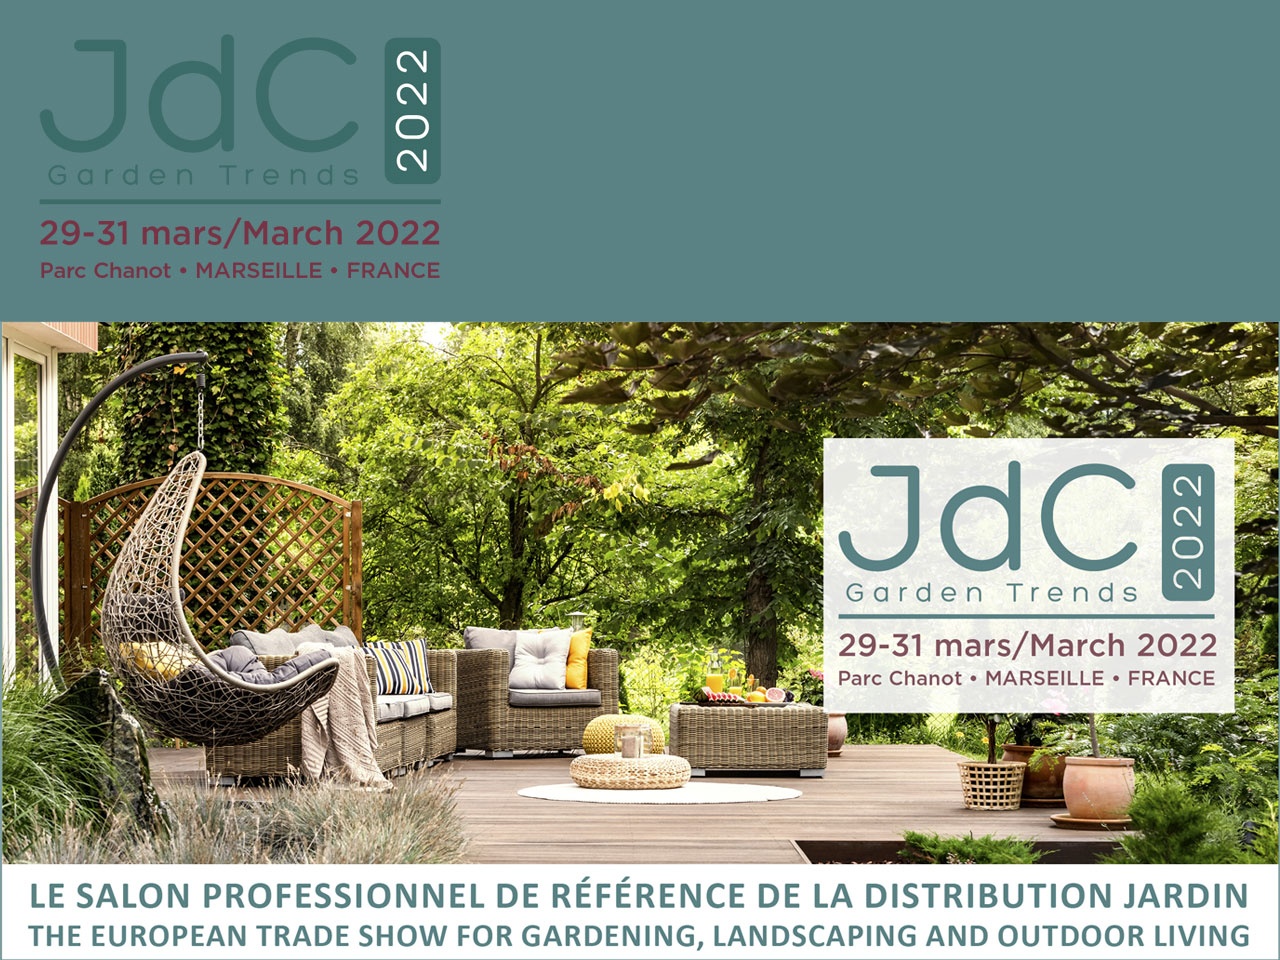 Les JdC Garden Trends annoncent leur retour du 29 au 31 mars 2022 à Marseille